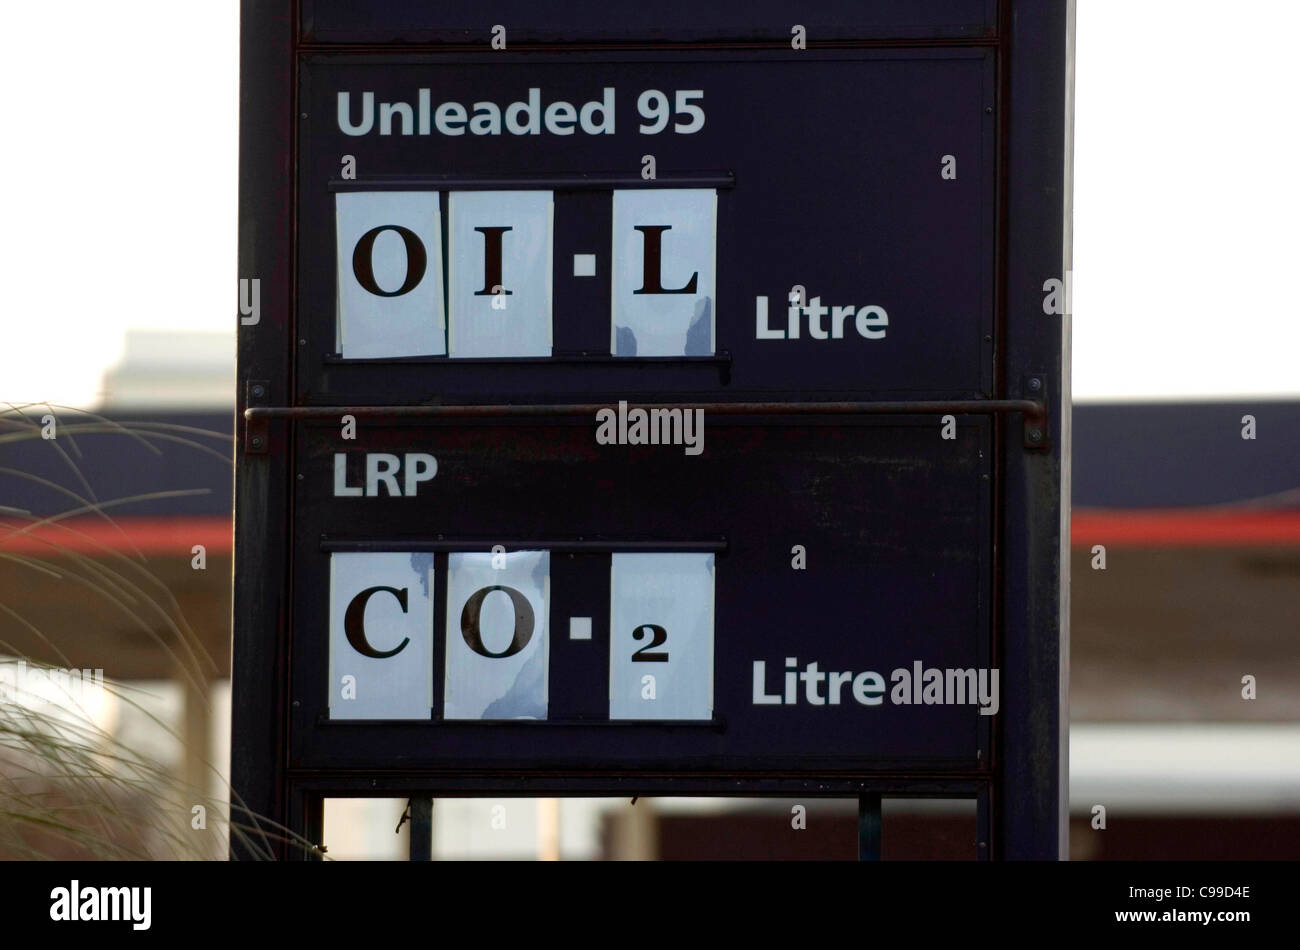 Il riscaldamento globale impatto segni pubblicati sulla stazione di benzina priceboard come si immette Swansea in Galles del Sud al posto del prezzo del carburante Foto Stock